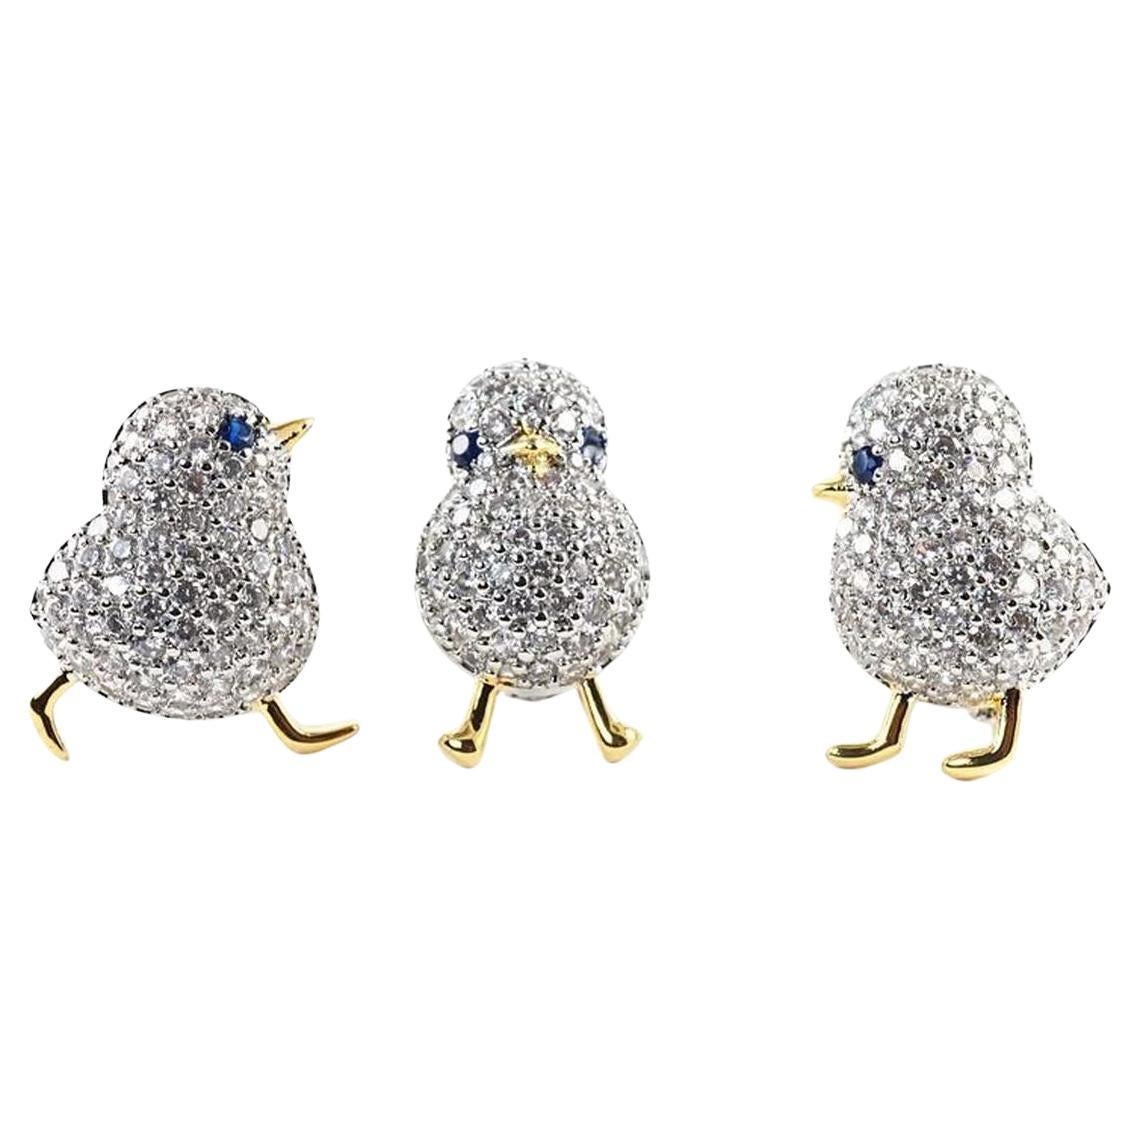 Vintage 3 Bird Chicks Sparkling Crystal Golden Brooch Pins For Sale